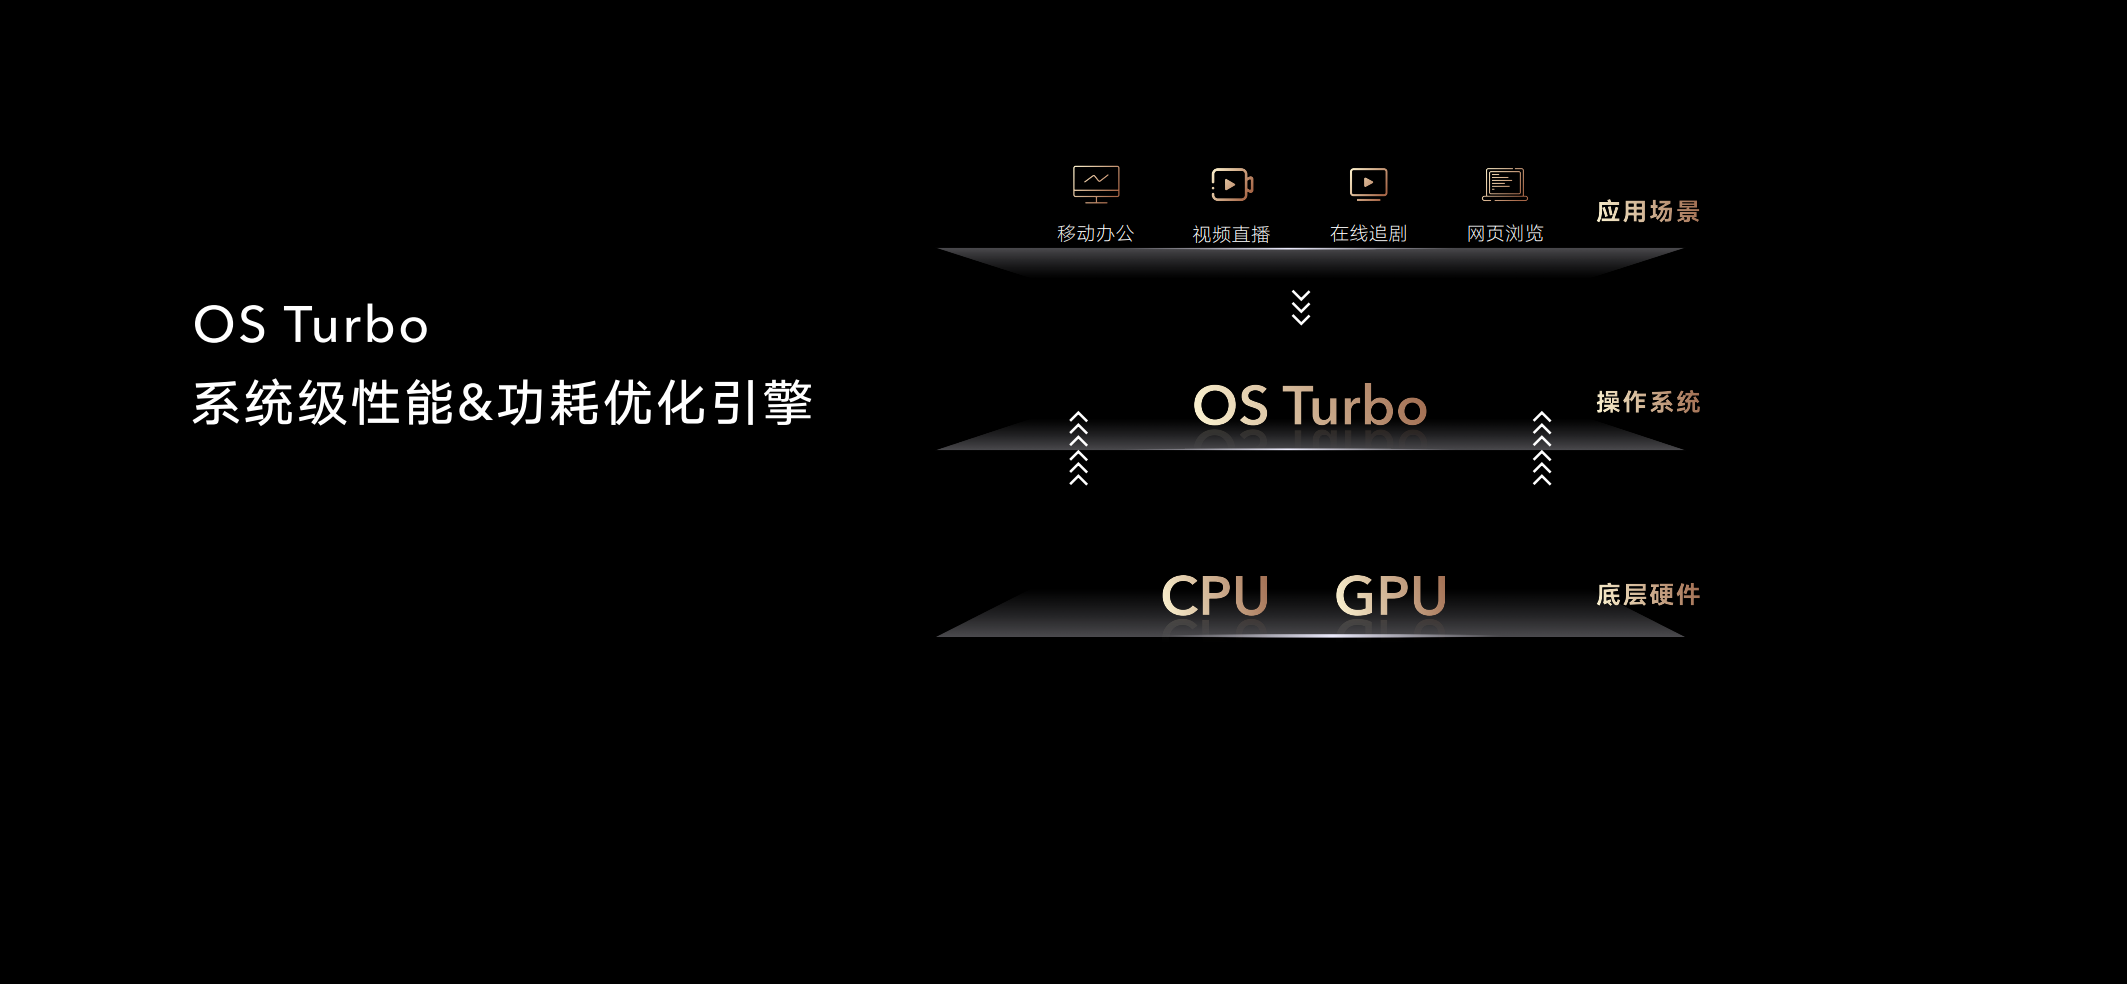 OS Turbo技术图